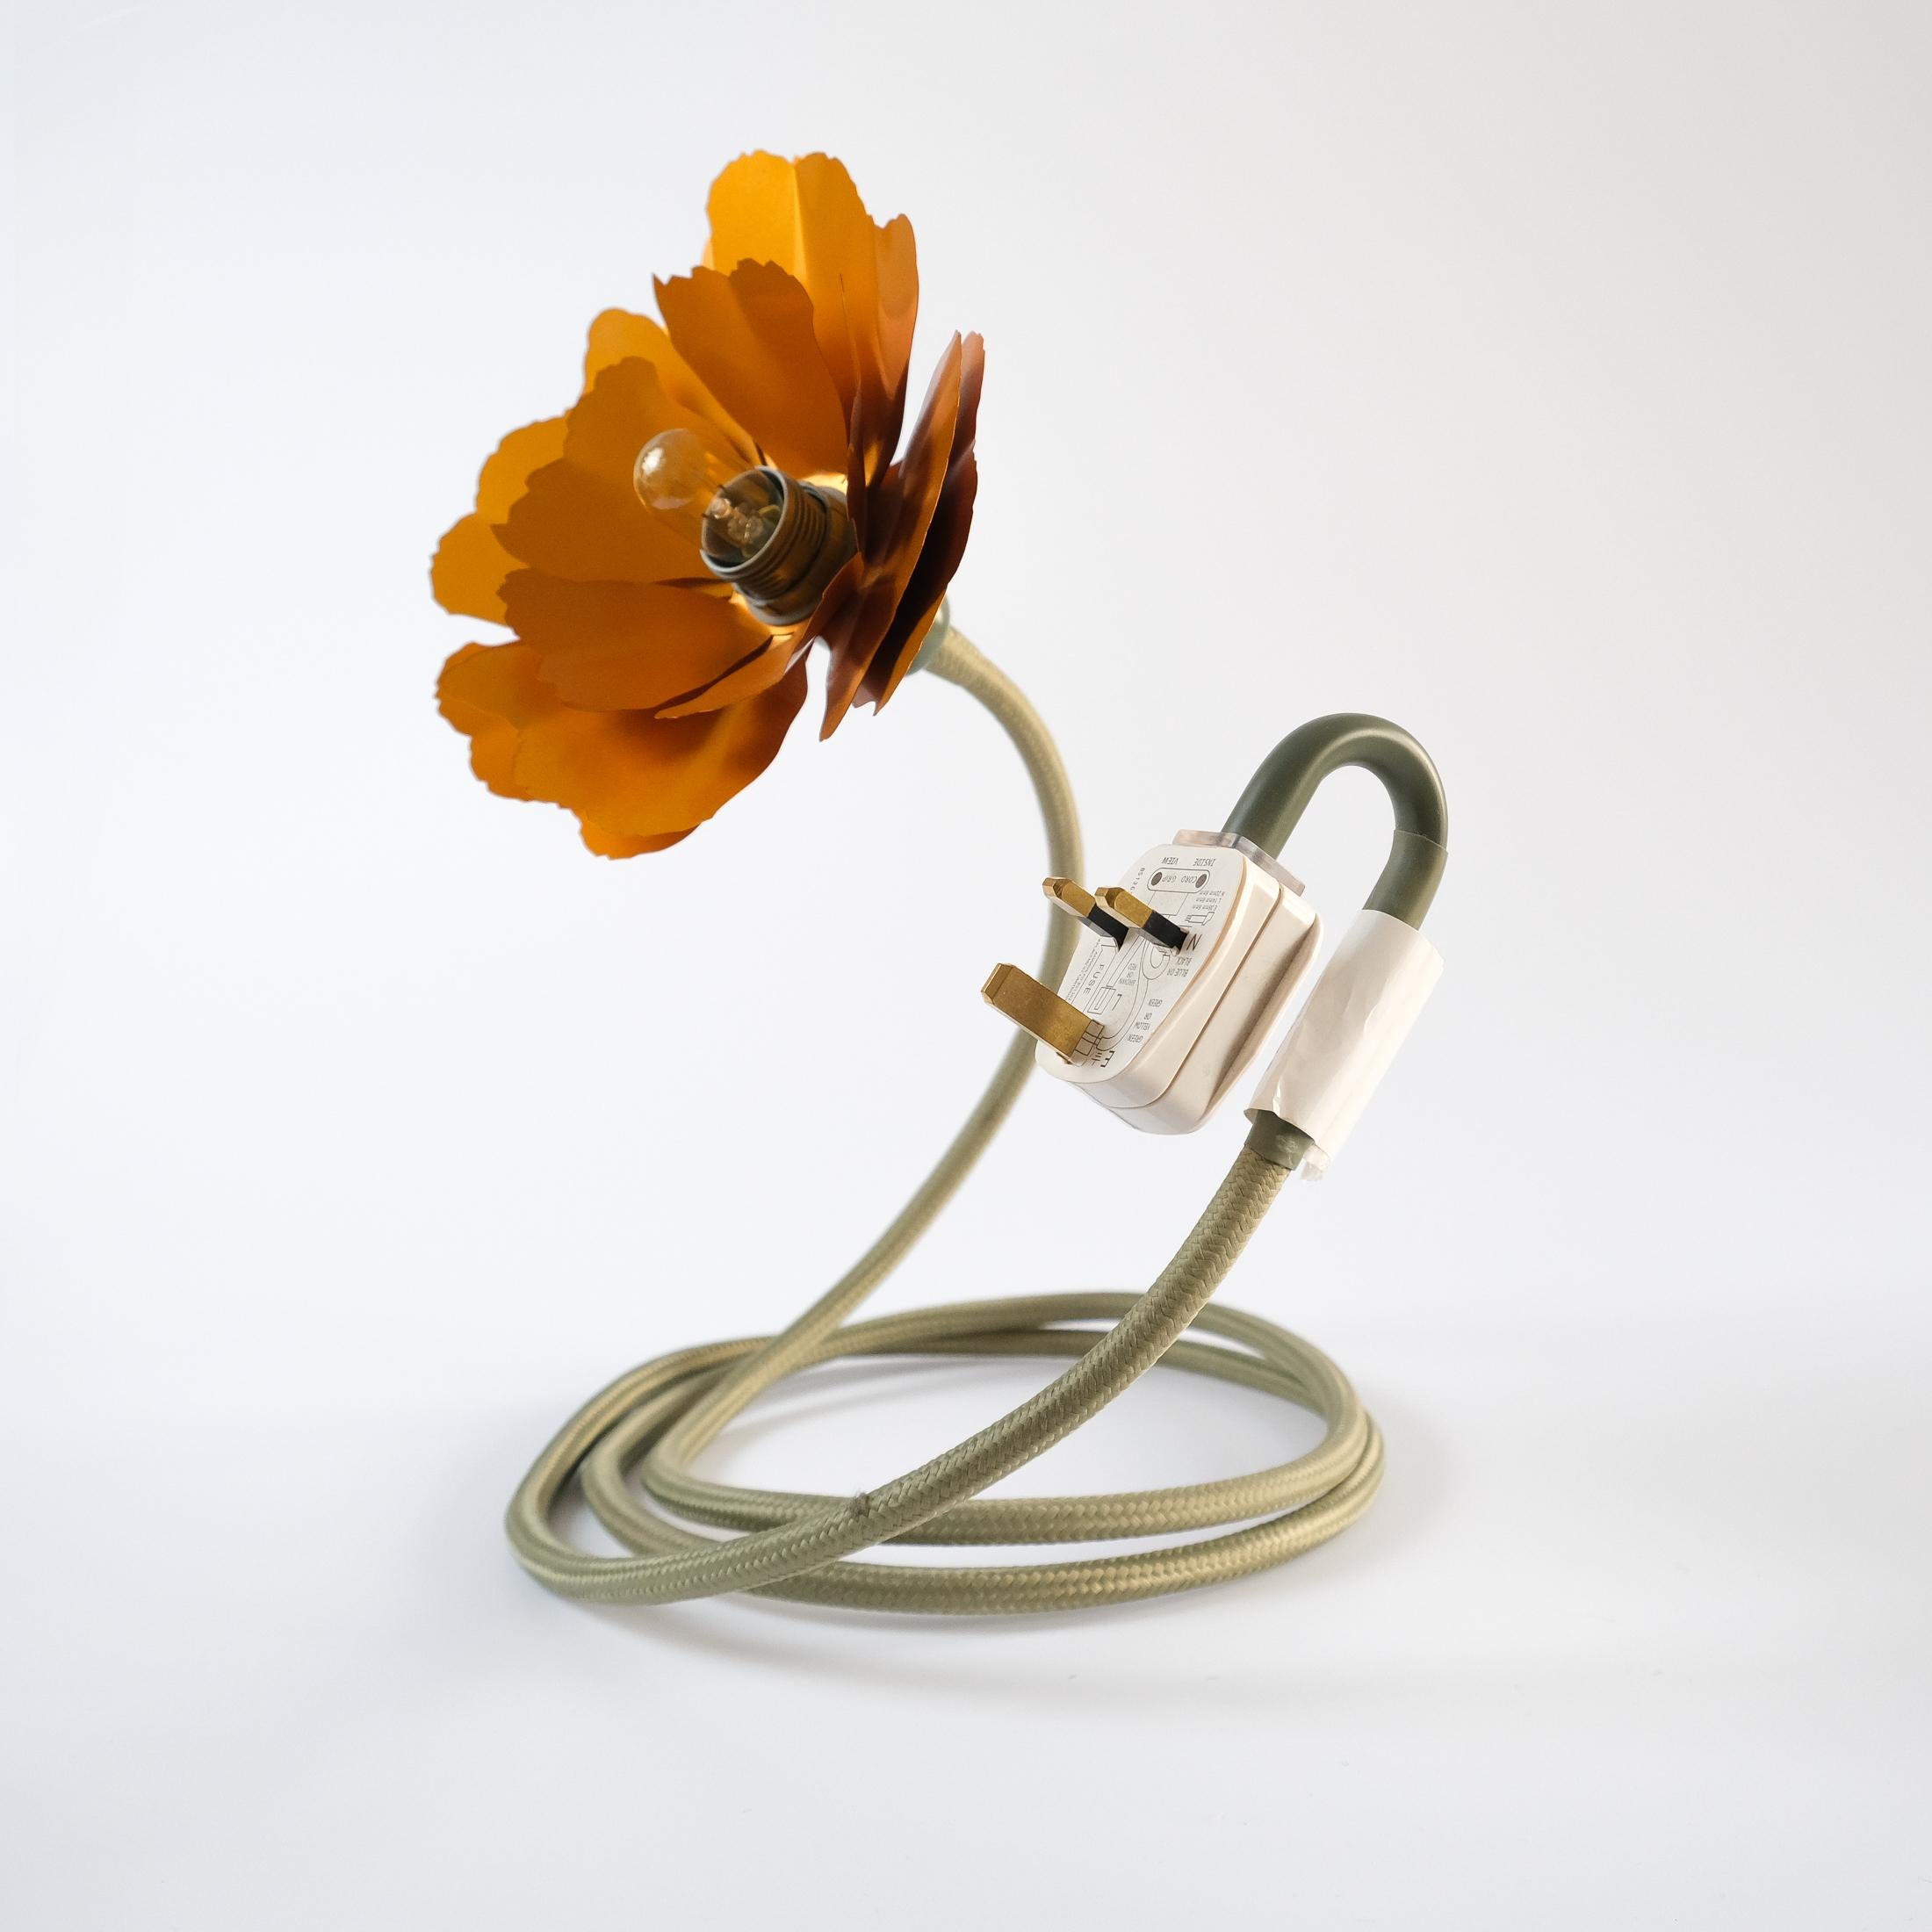 Helena Christensen's Flexible Flower Lamp for Habitat “V.I.P” Collection, 2004 For Sale 7